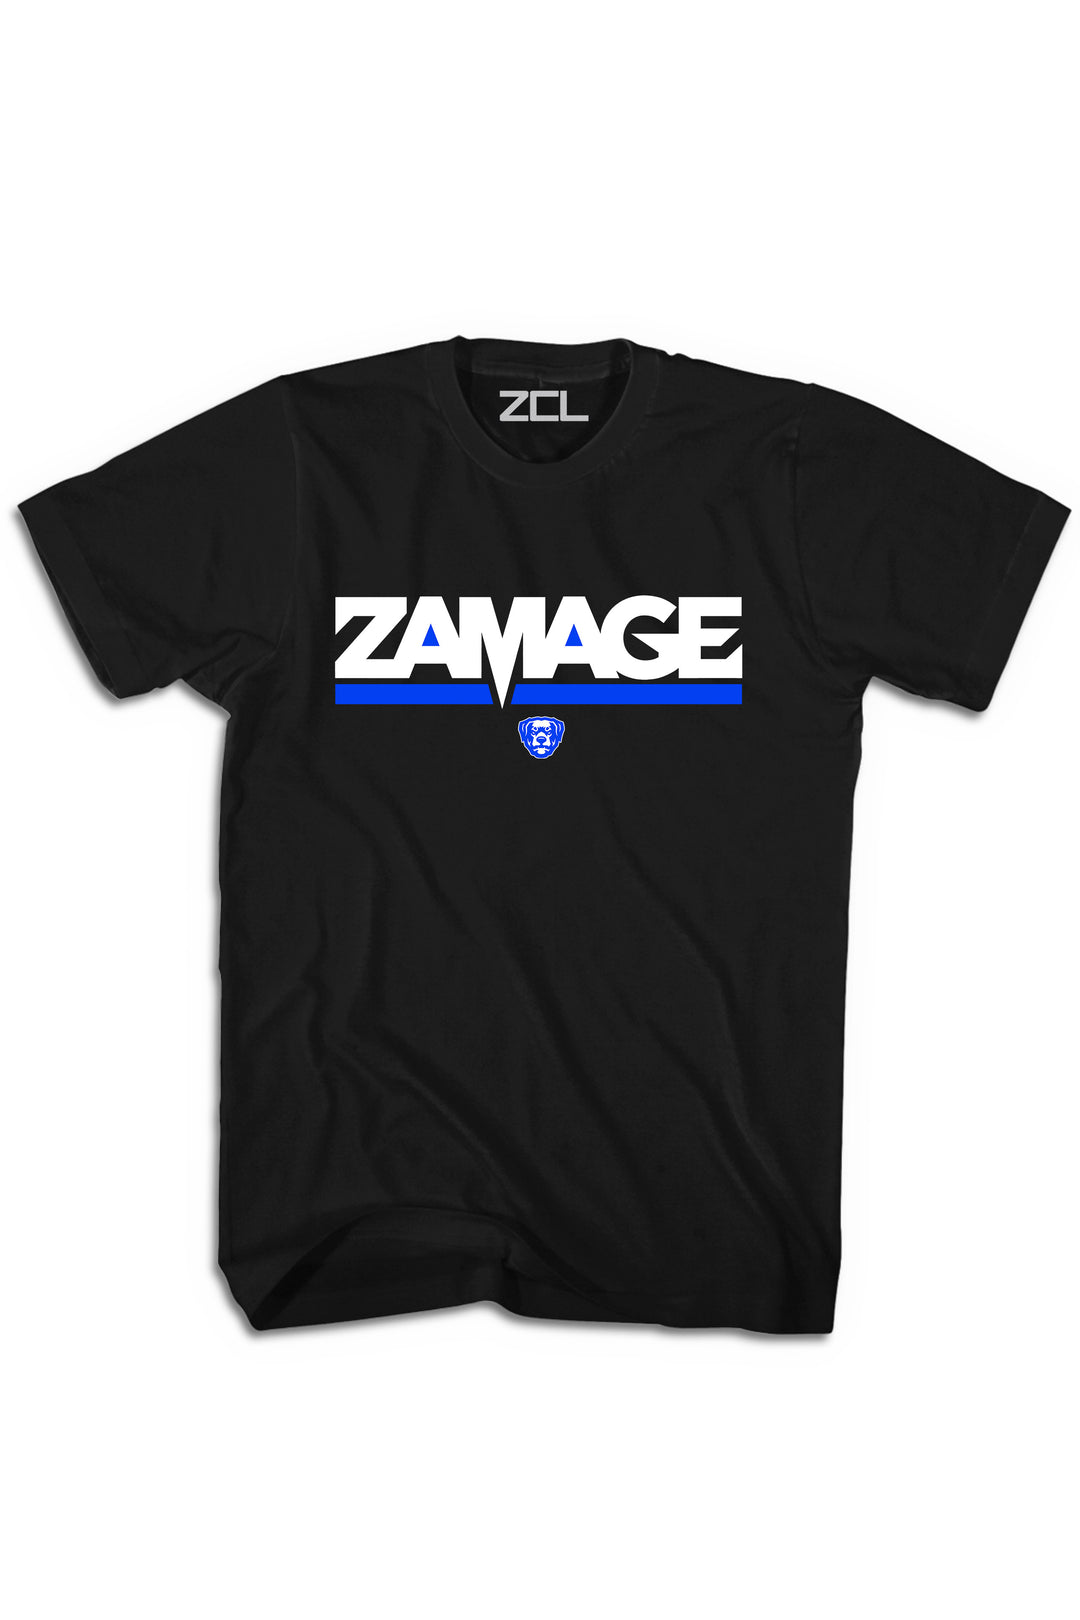 Zamage Logo Tee (Royal) - Zamage